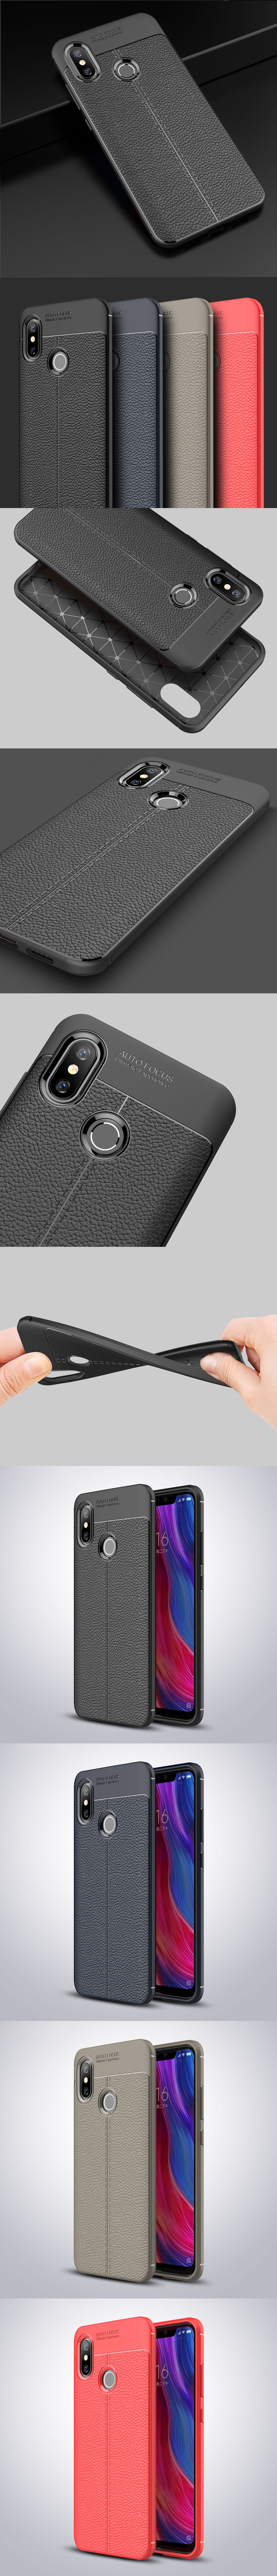 285-小米-皮革紋造型超薄全包手機殼背蓋